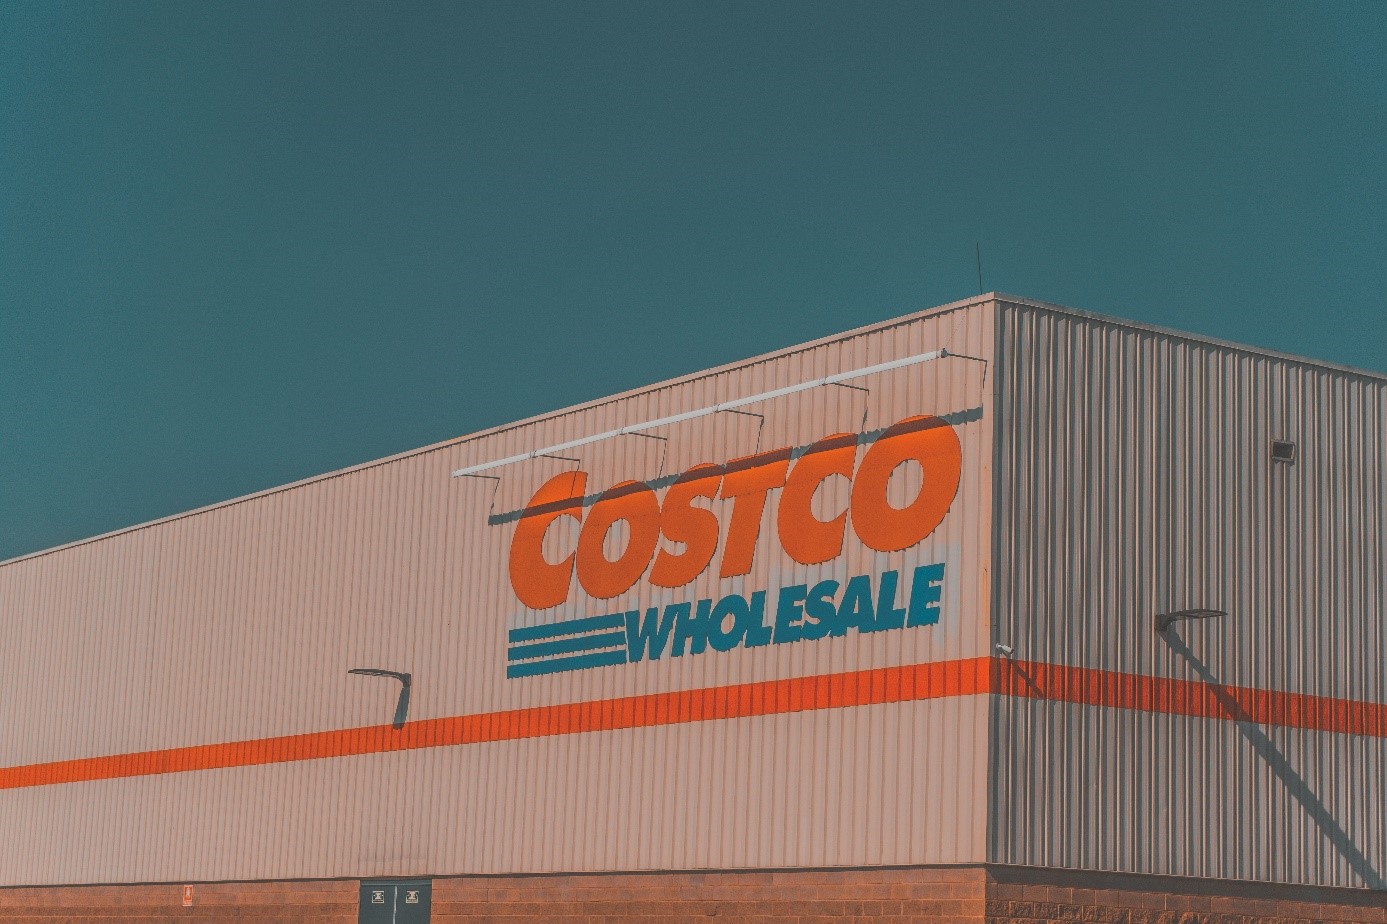 Guld har förvandlats till pengar för Costco, där försäljningen av guld som inleddes förra året har förvandlats till en kassako för detaljhandelsföretaget.